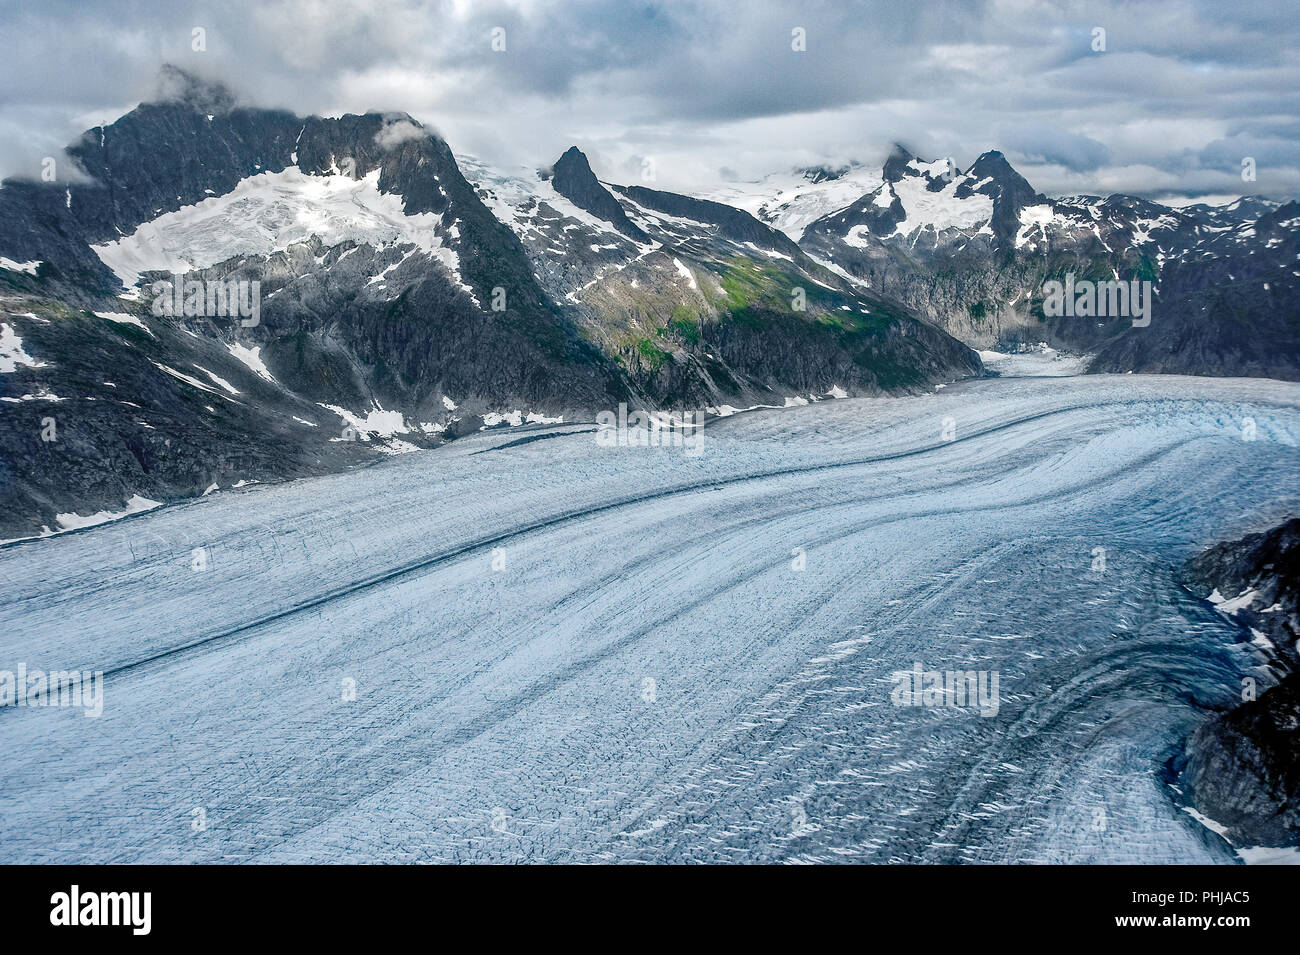 Juneau Alaska Kreuzfahrt Schiff Hubschrauber Tour Ausflug über die Gletscher und Berge des Juneau Icefield - toller Urlaub Reise für Alaska Touristen Stockfoto